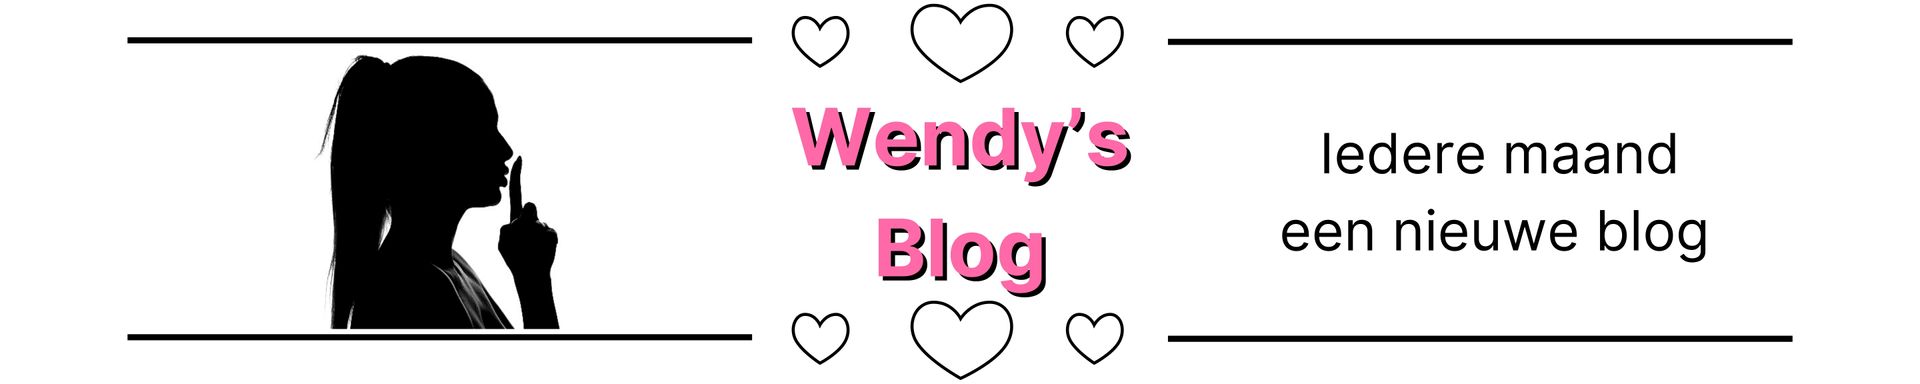 Wendy schrijft over haar sensuelen en seksuele avonturen met de seksspeeltjes die ze toegestuurd krijgt.